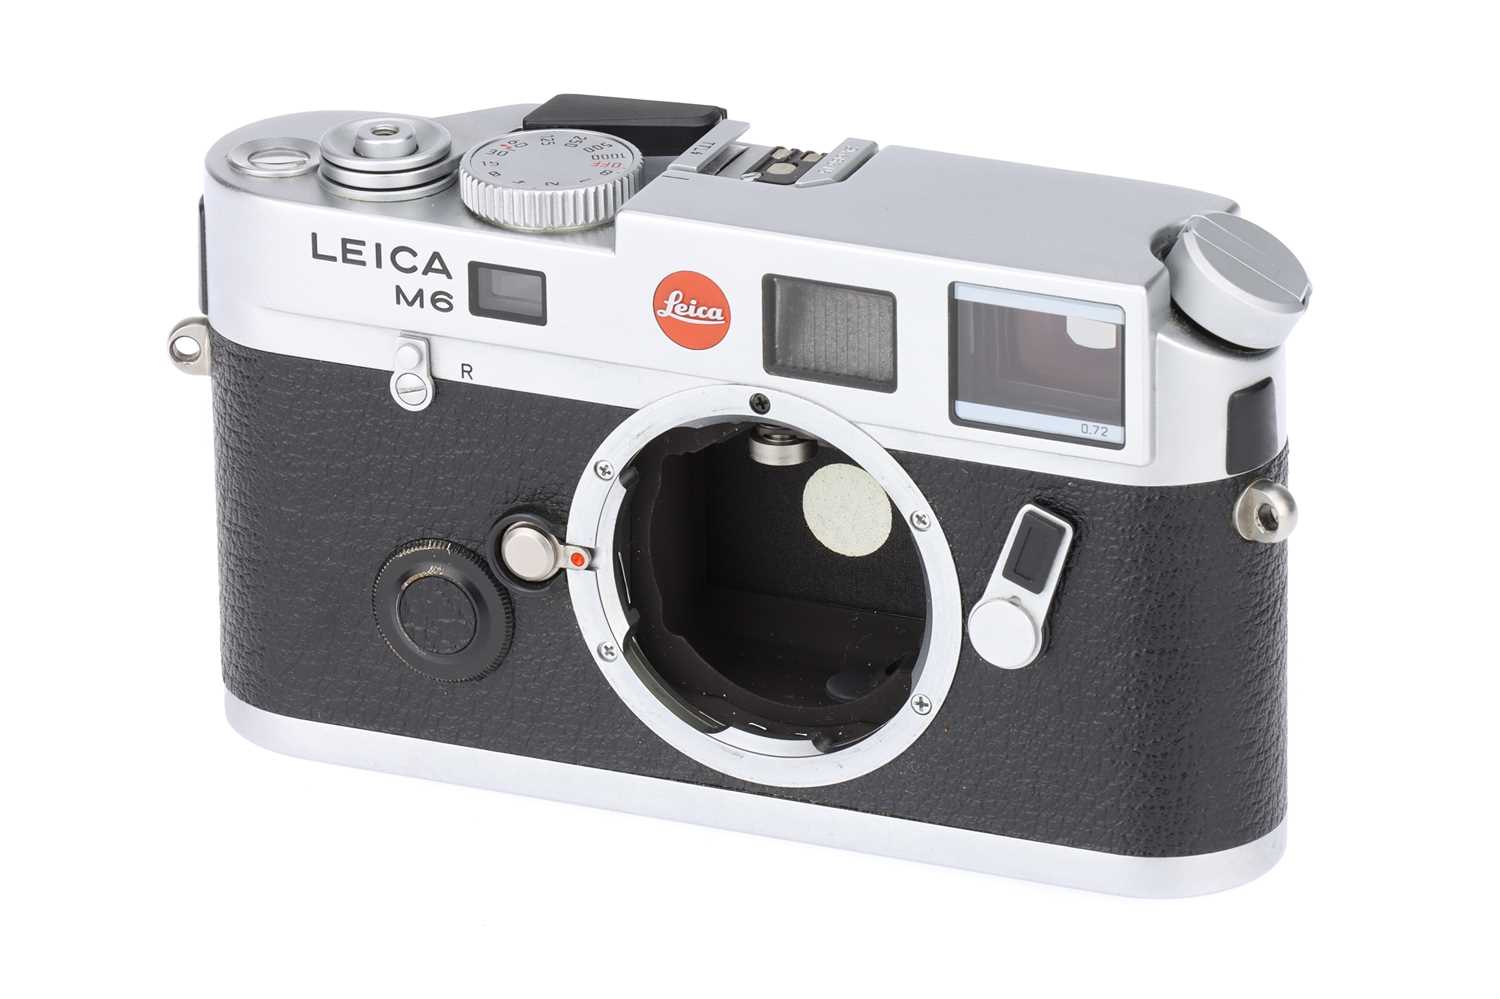 Lot 38 - A Leica M6 0.72 TTL Rangefinder Body